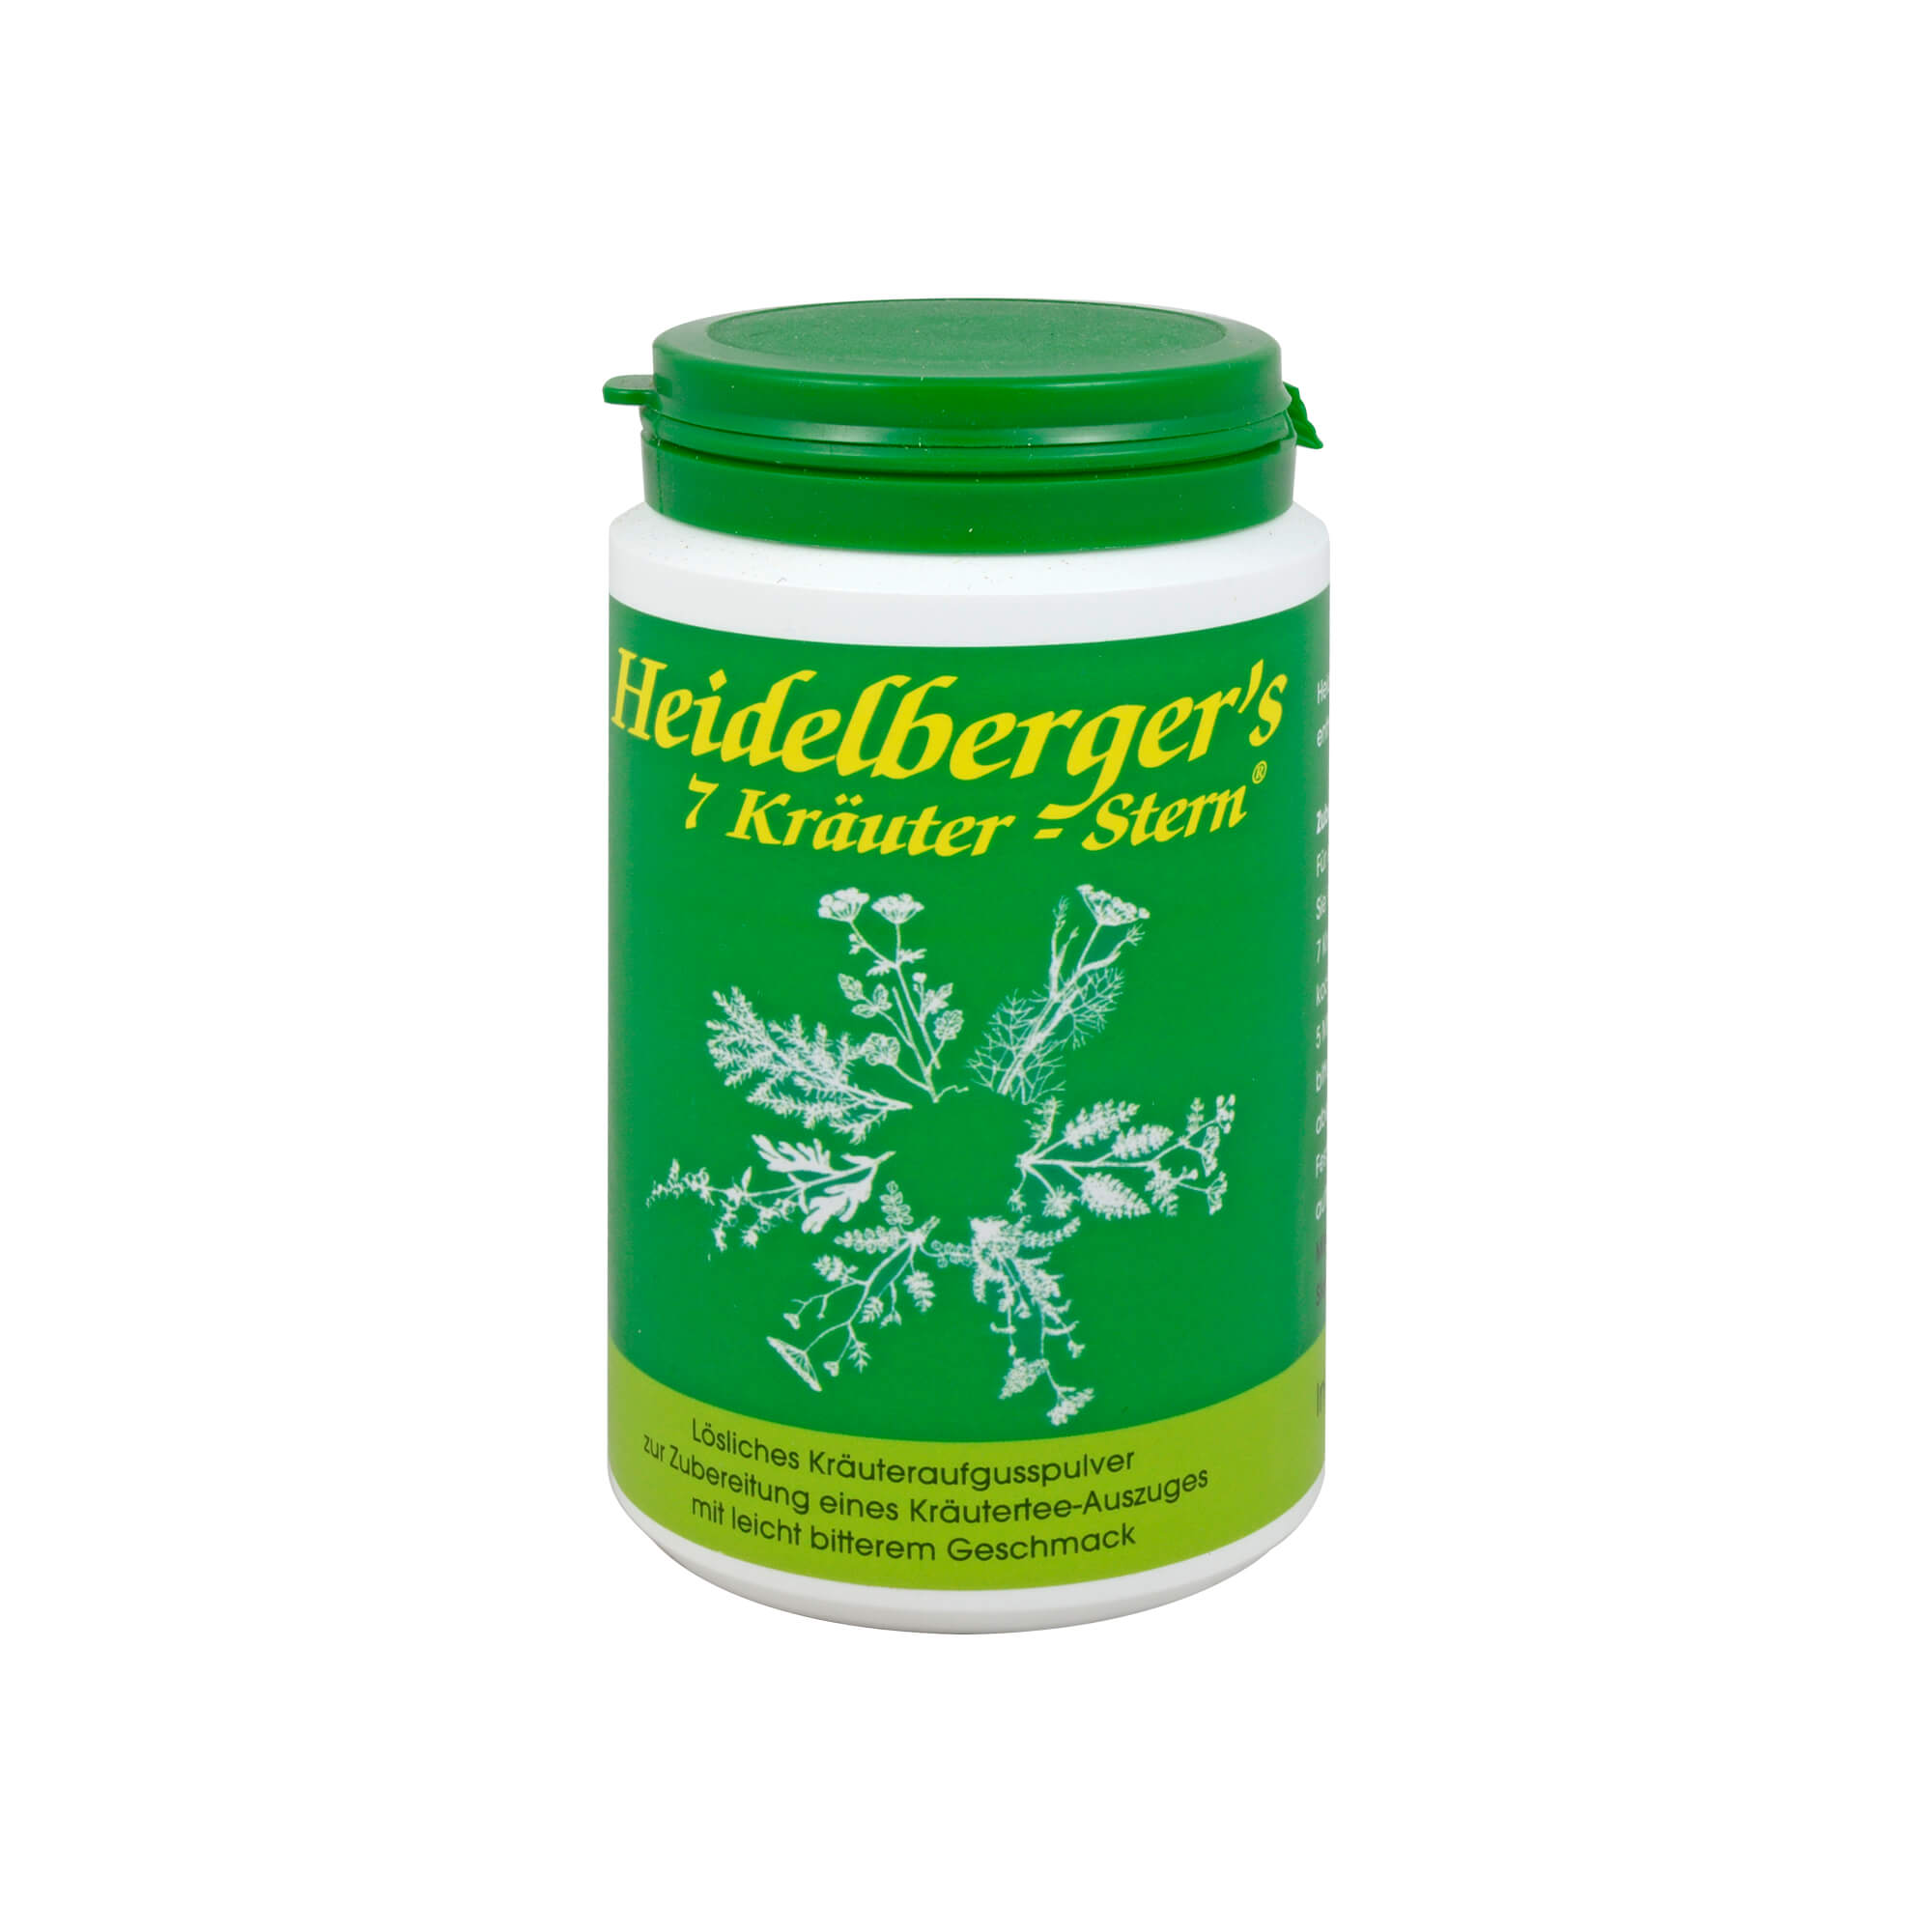 Heidelberger’s 7 Kräuter-Stern - Bitterstoffe zur Entschleimung und zur Anregung der Verdauungs- und Entgiftungsorgane.